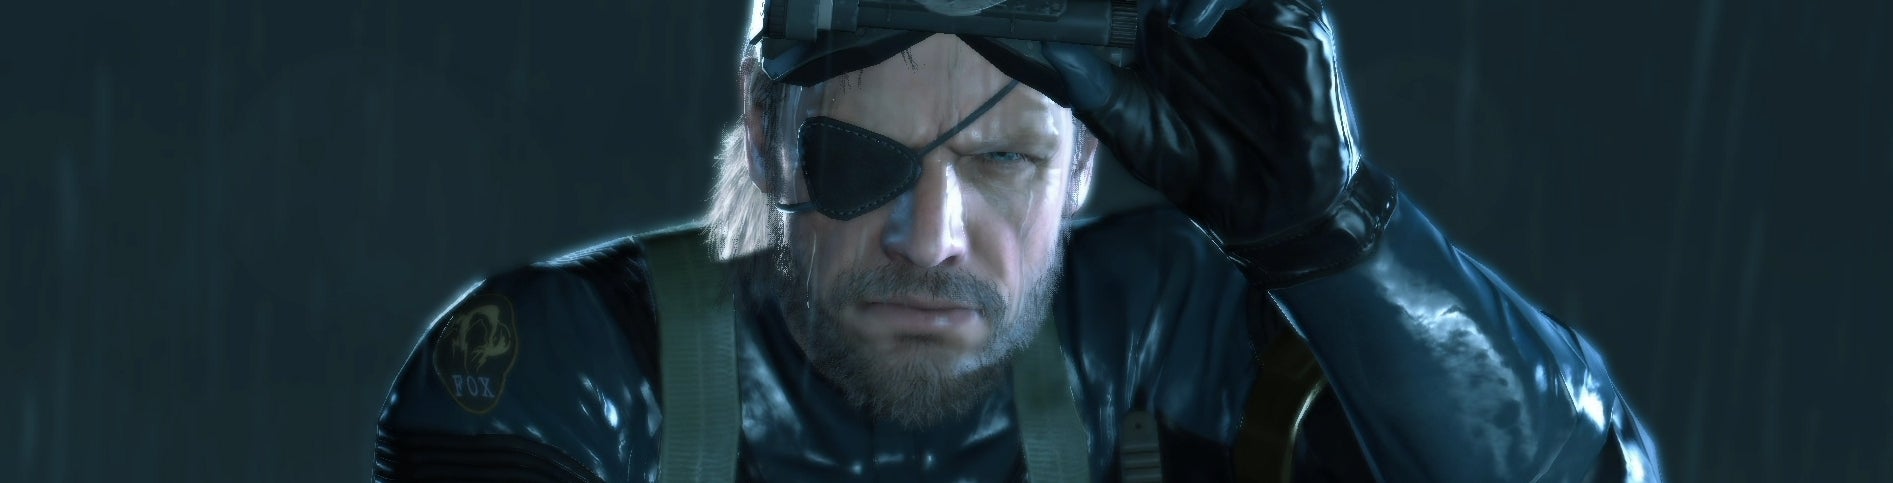 Afbeeldingen van Metal Gear Solid V: Ground Zeroes lanceert in lenteperiode 2014